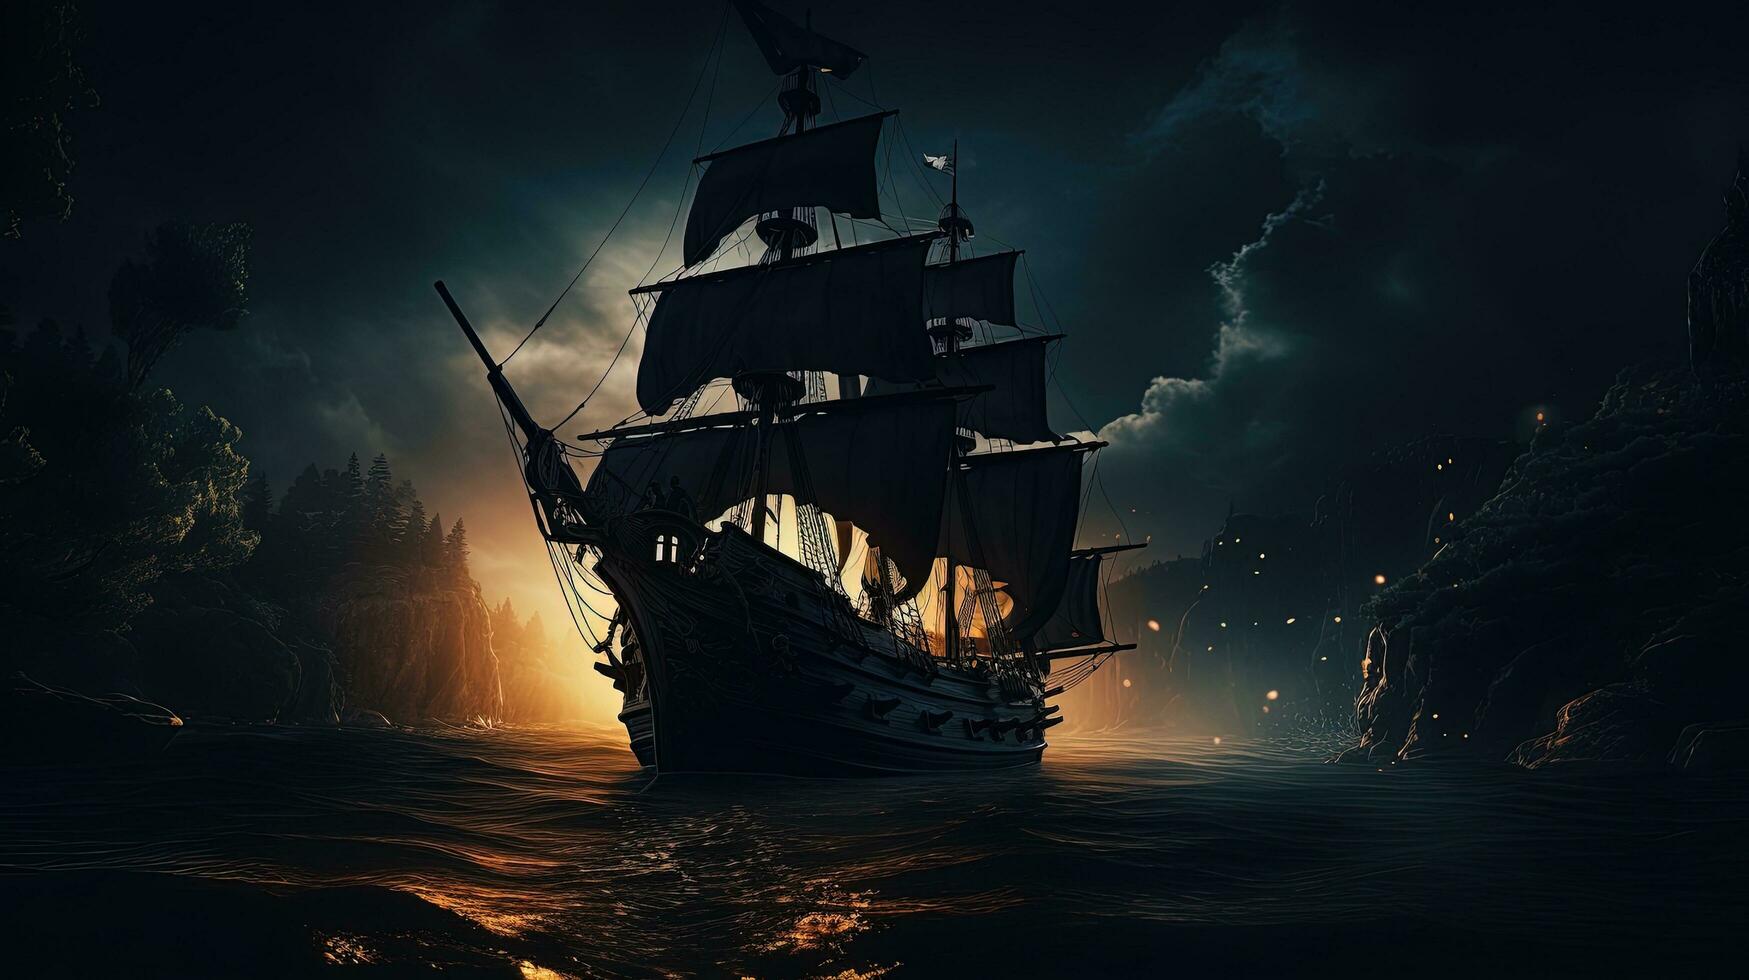 silueta de pirata Embarcacion a noche con misterioso mar ligero foto